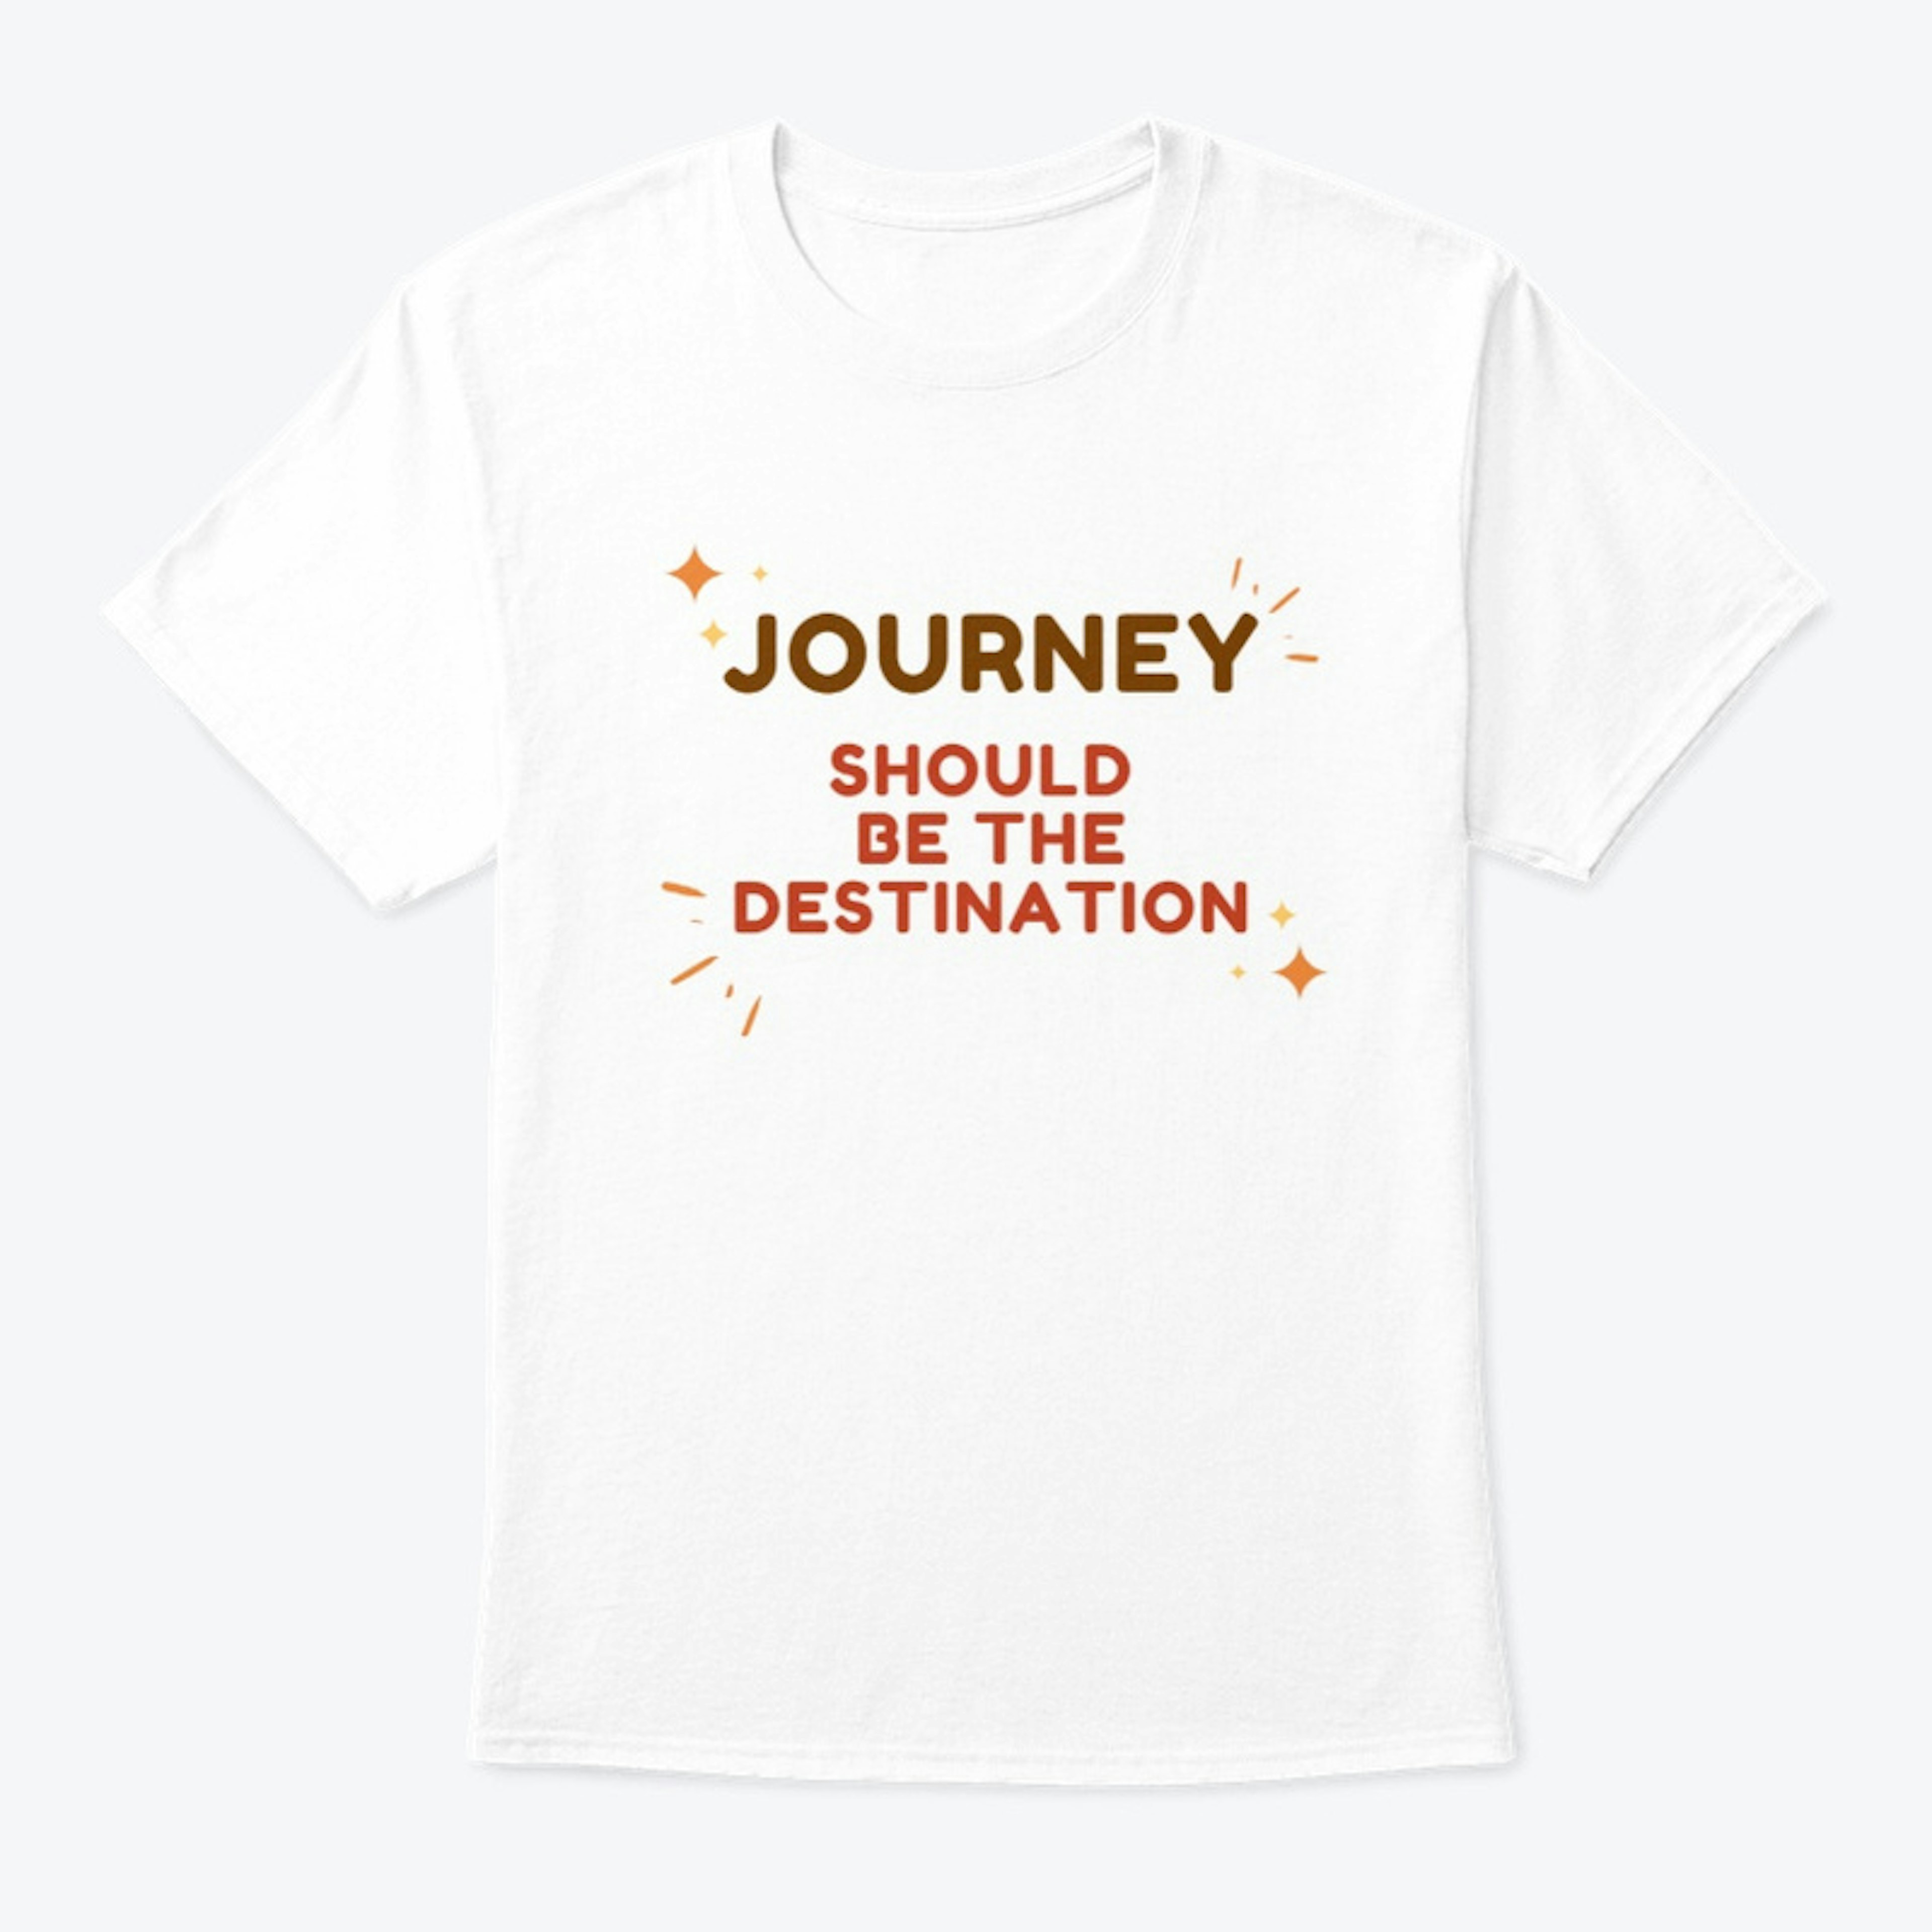 Journey is the destination T shirt